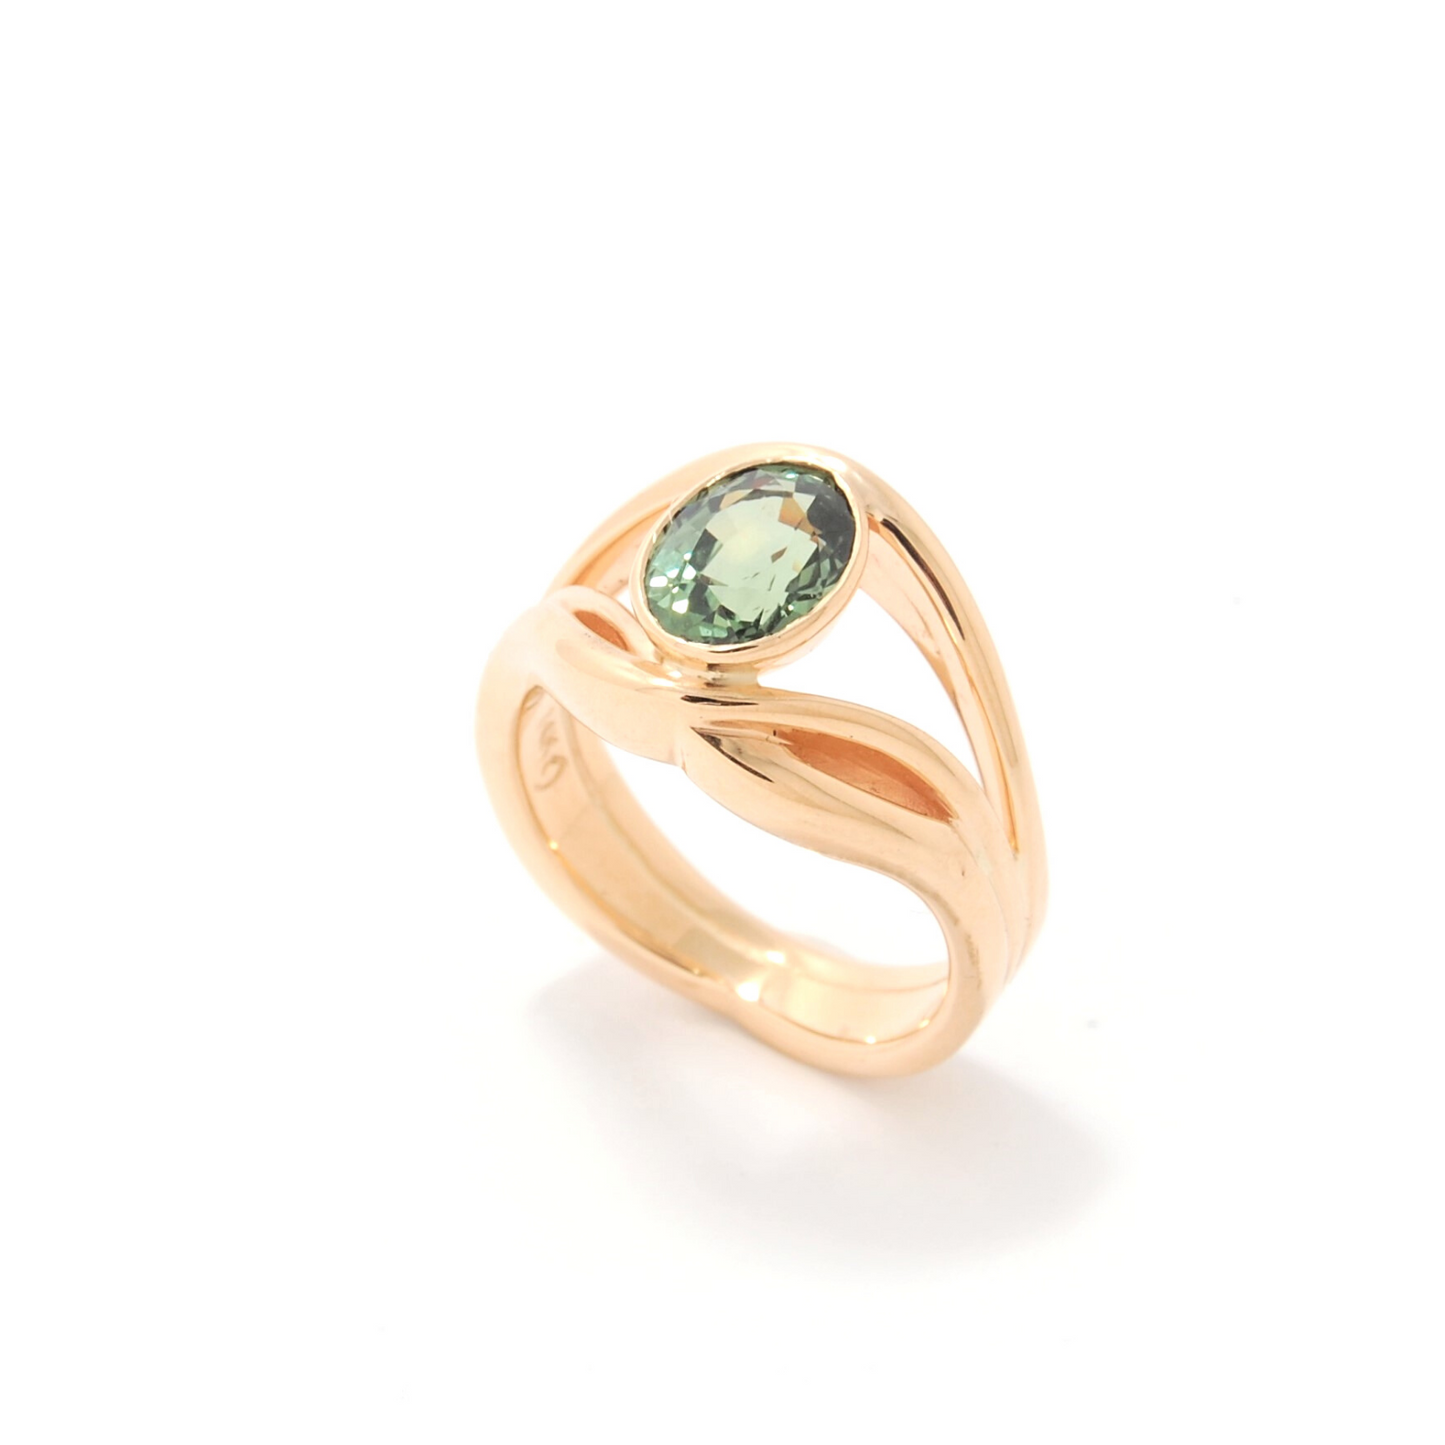 Adrift Ring featuring a Green Sapphire